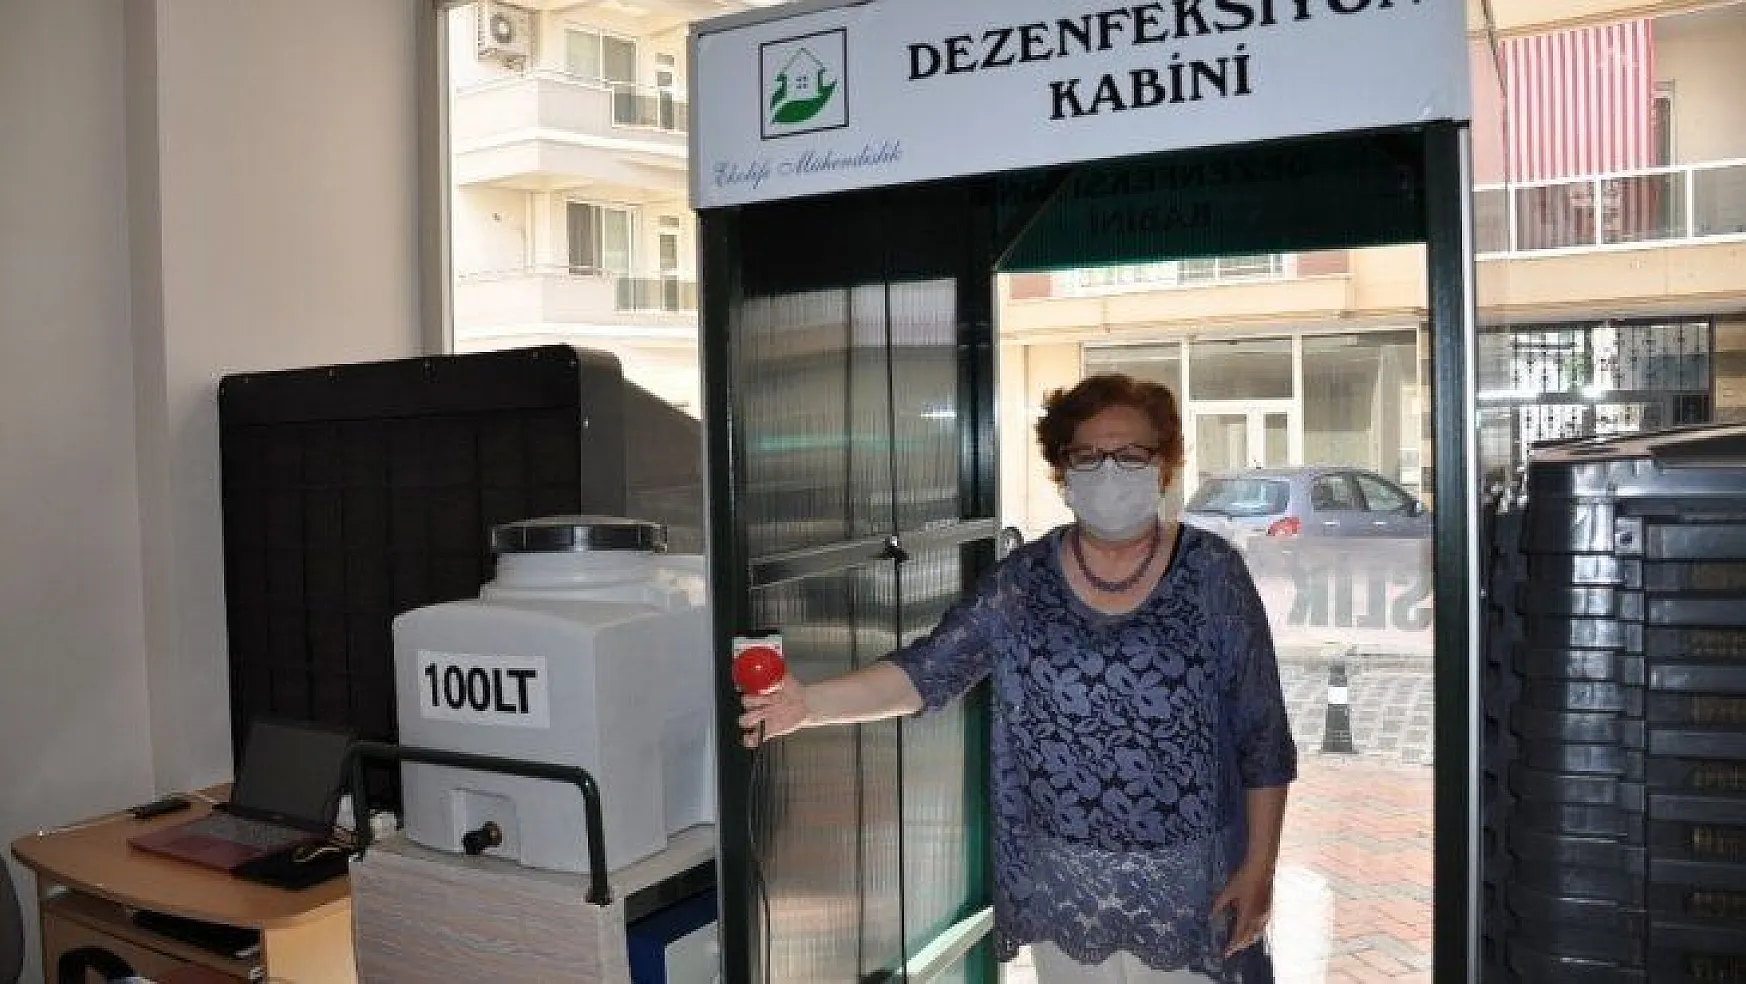 Milas'ta bir firma talep üzerine dezenfeksiyon kabini yaptı